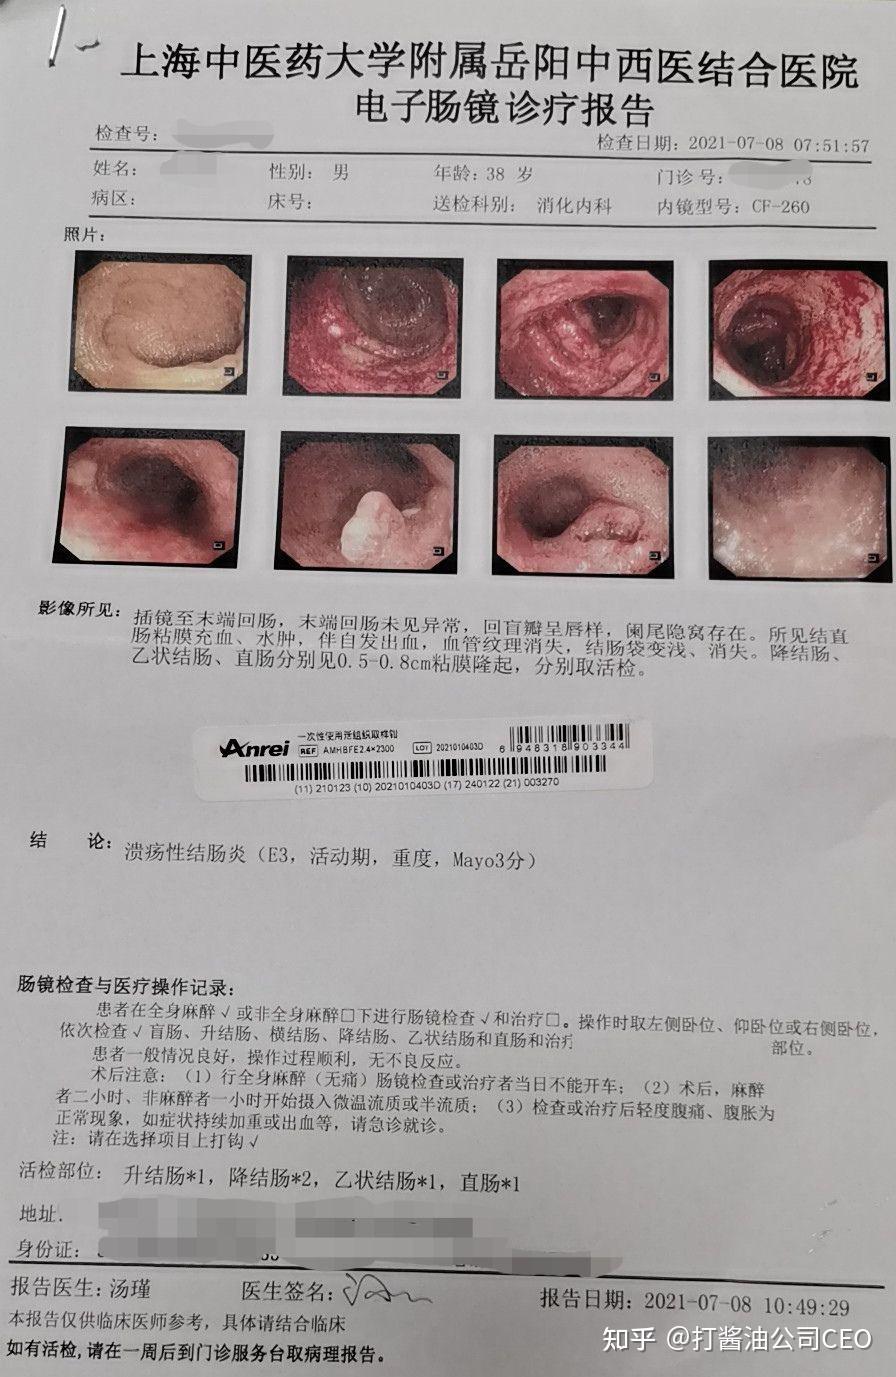 肠镜活检报告图片